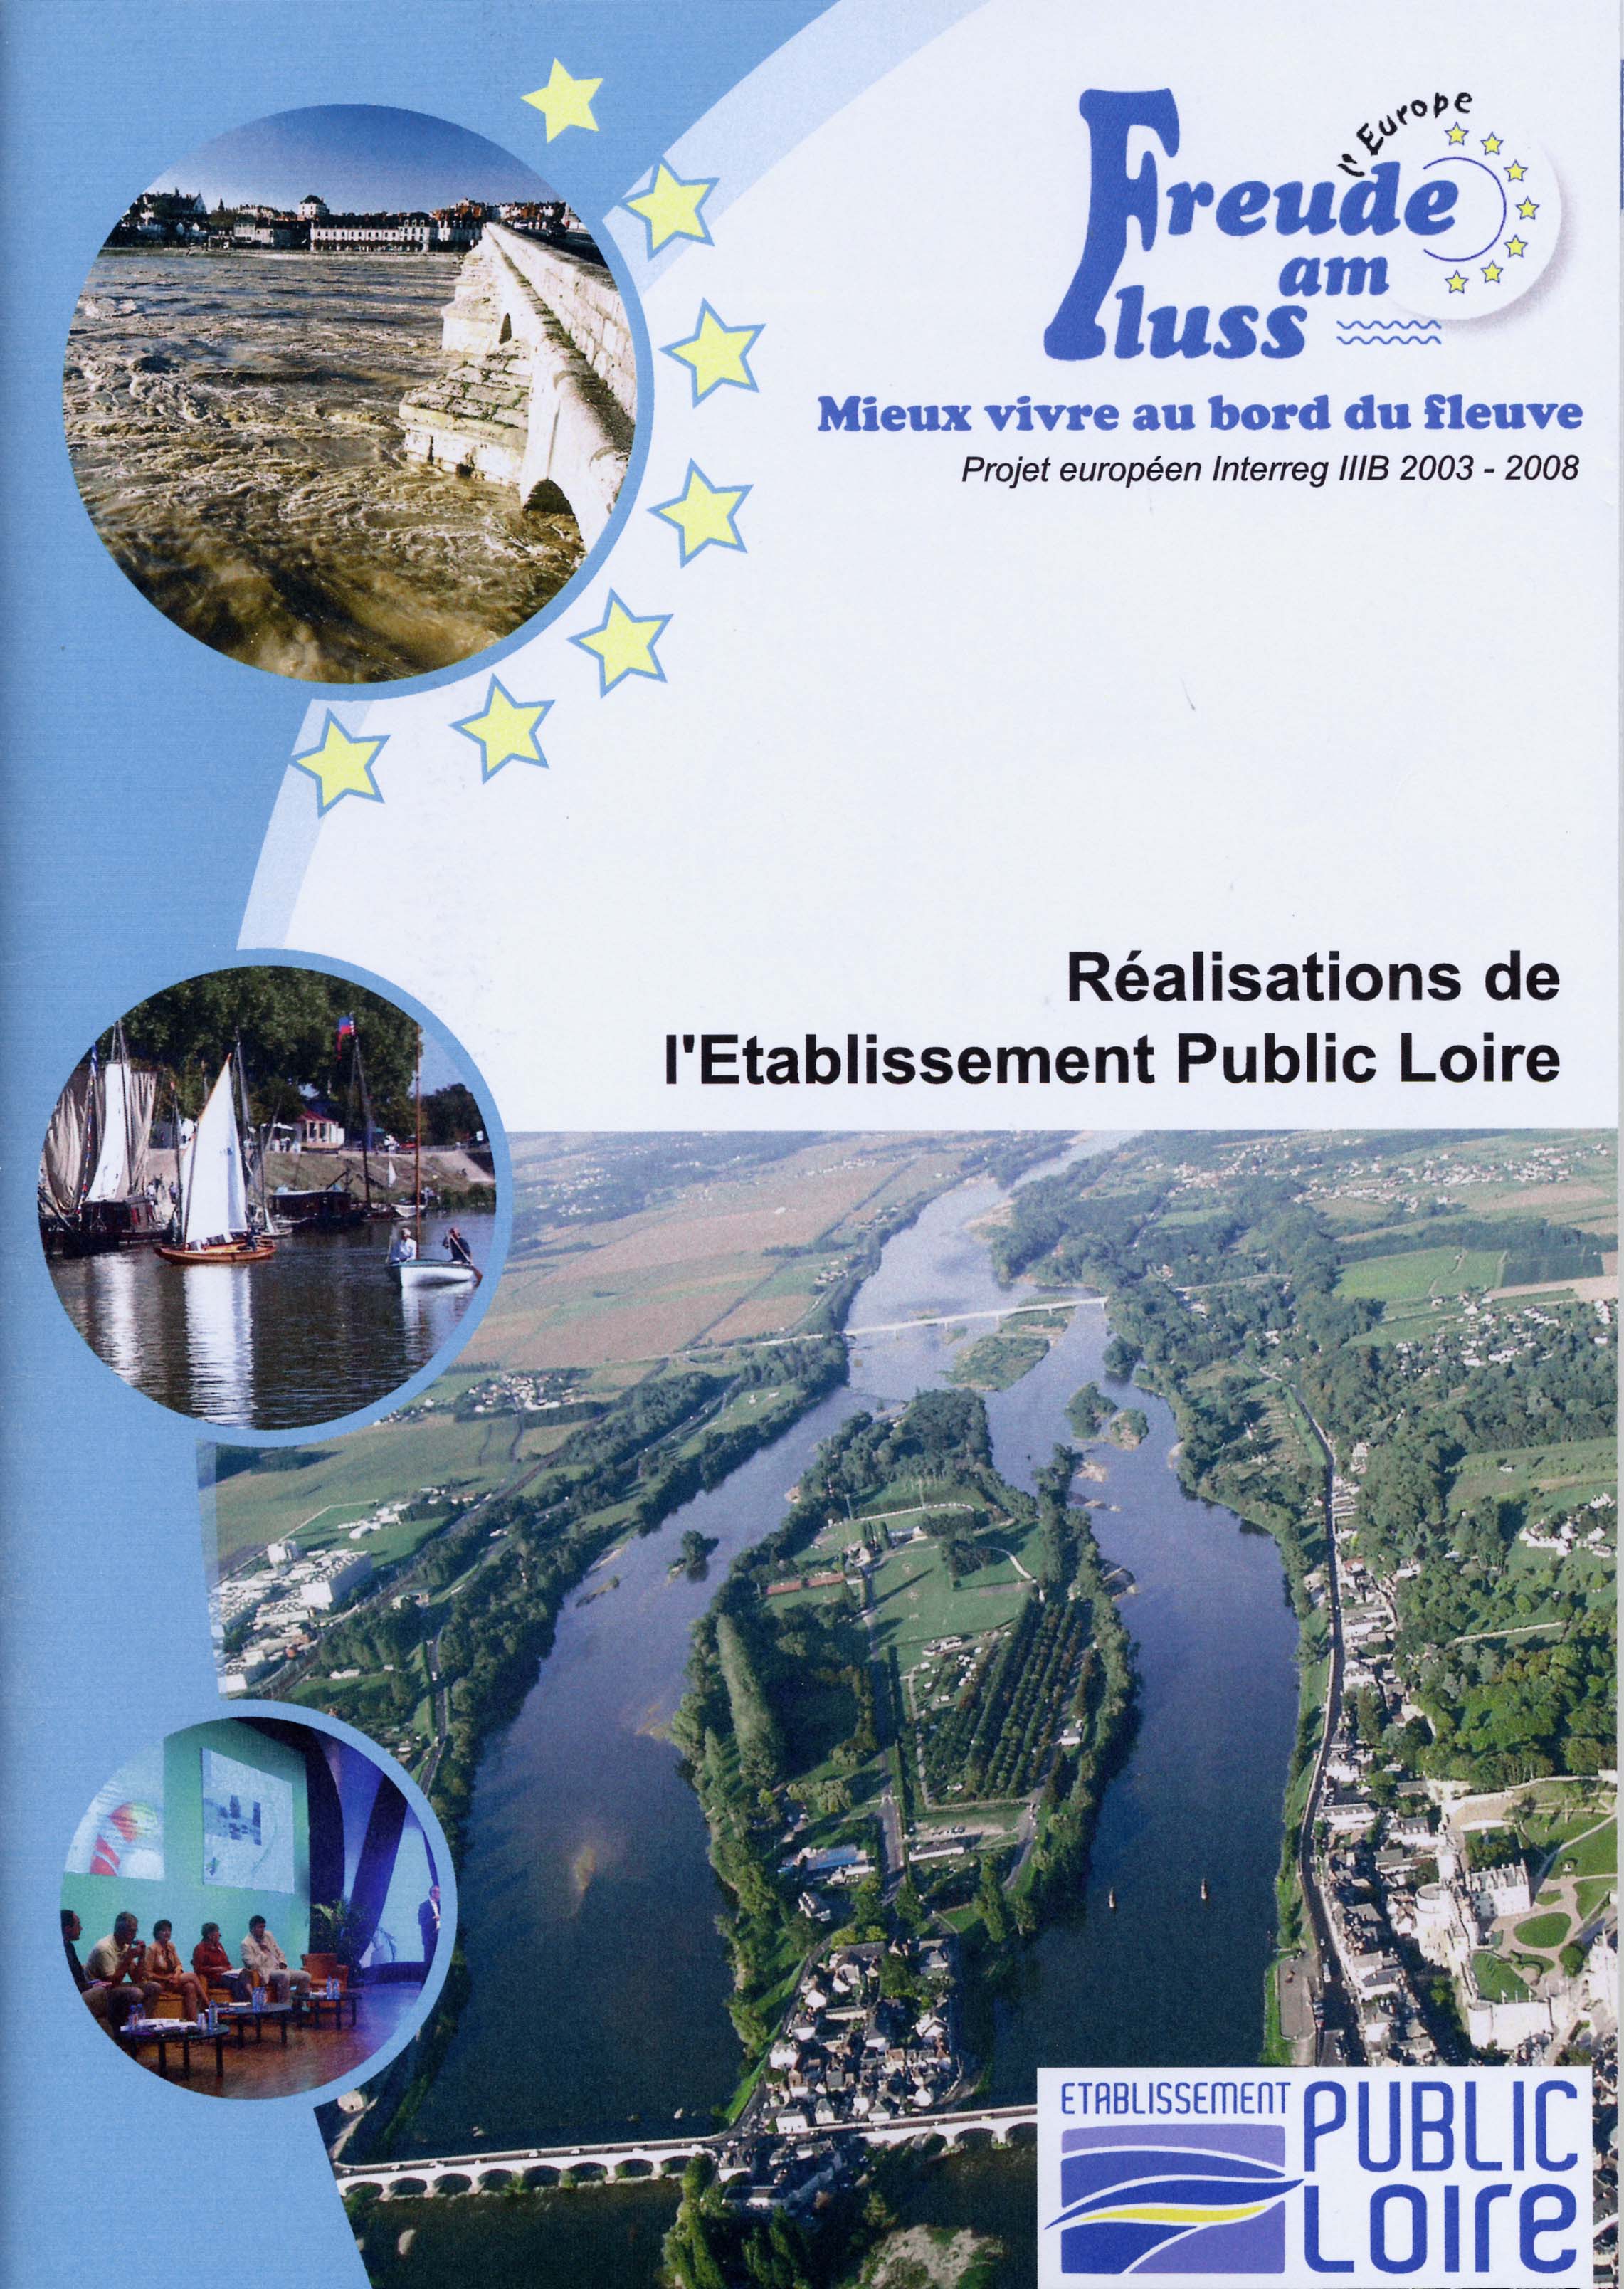 Freude am Fluss : Mieux vivre au bord du fleuve. Projet europen Interreg IIIB 2003-2008. Ralisations de l'Etablissement Public Loire